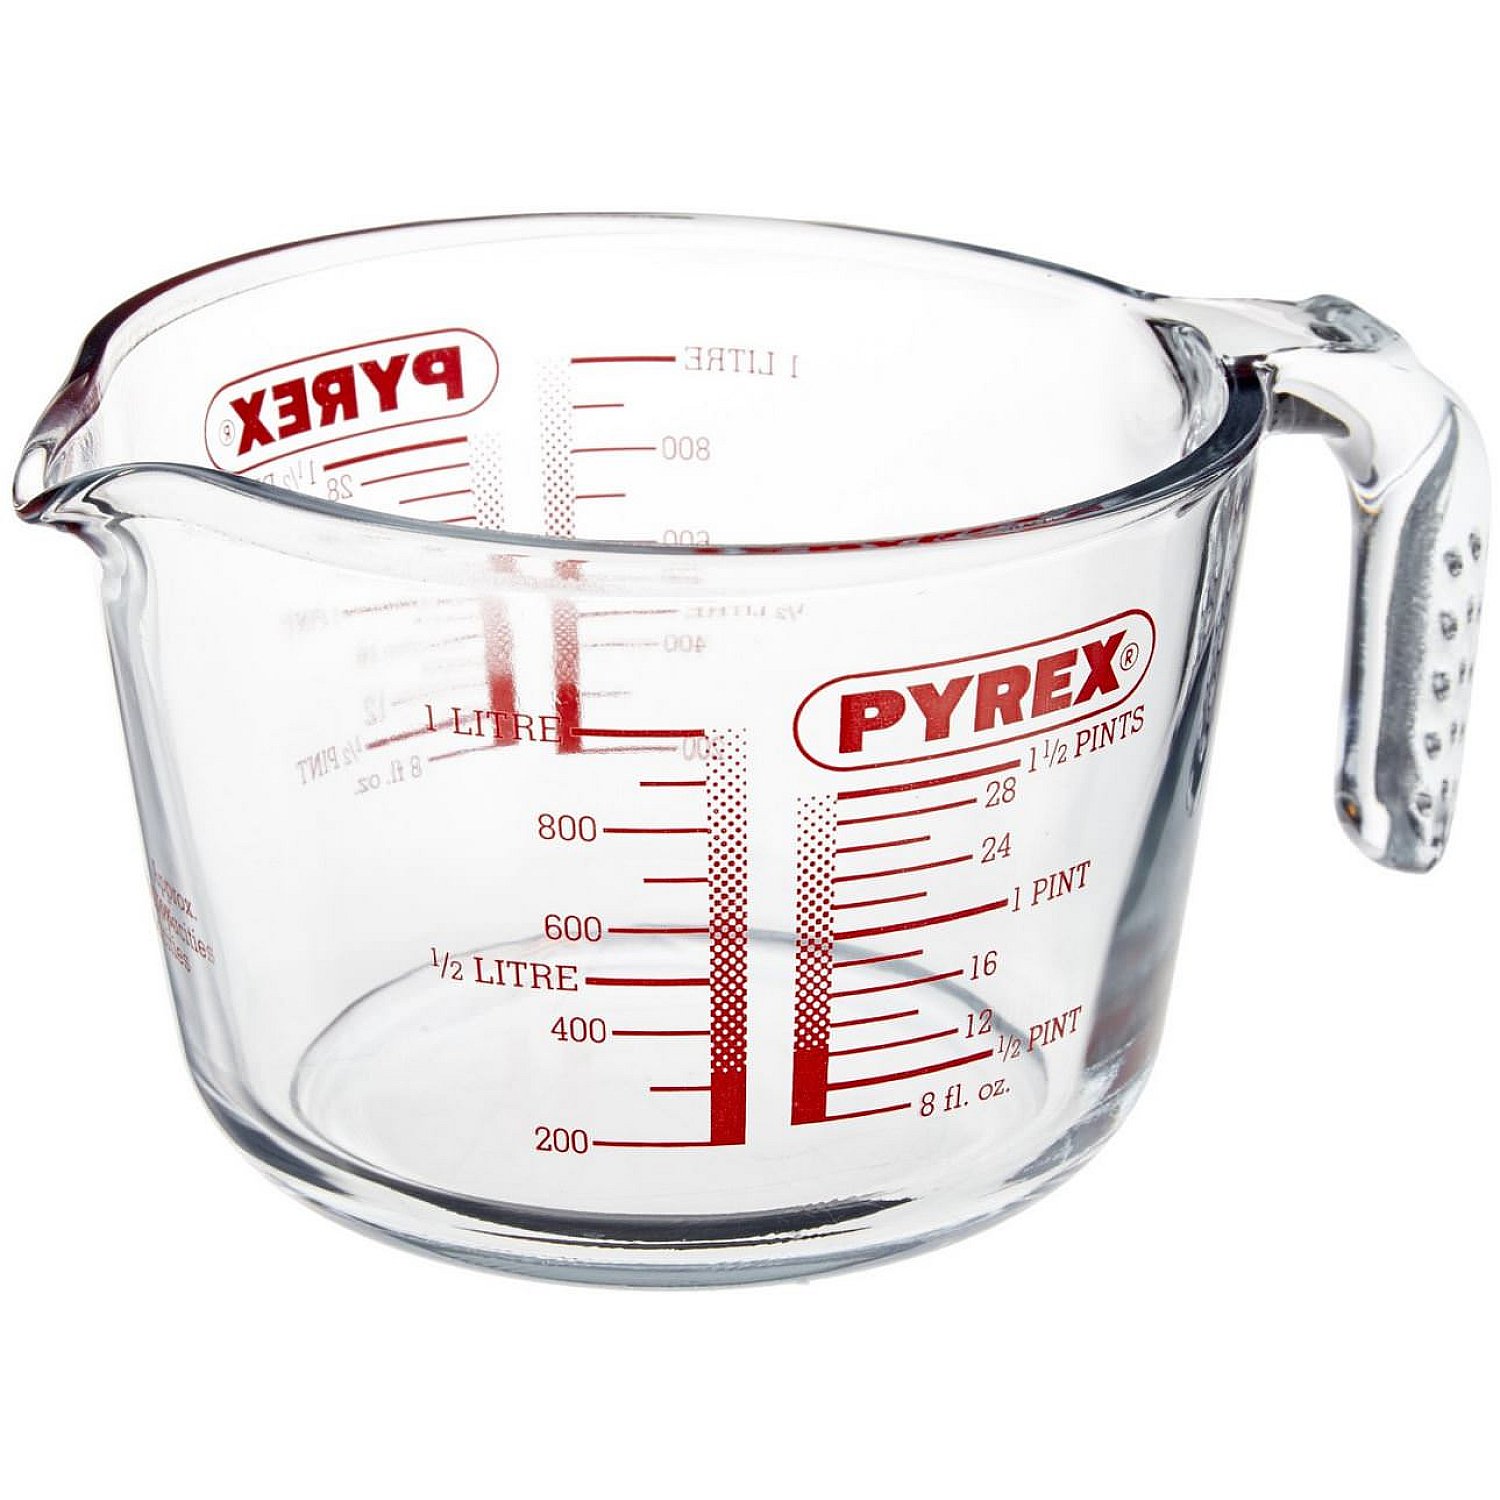 Pyrex Classic Messbecher 1 Liter - Alle Messbecher auf der Website